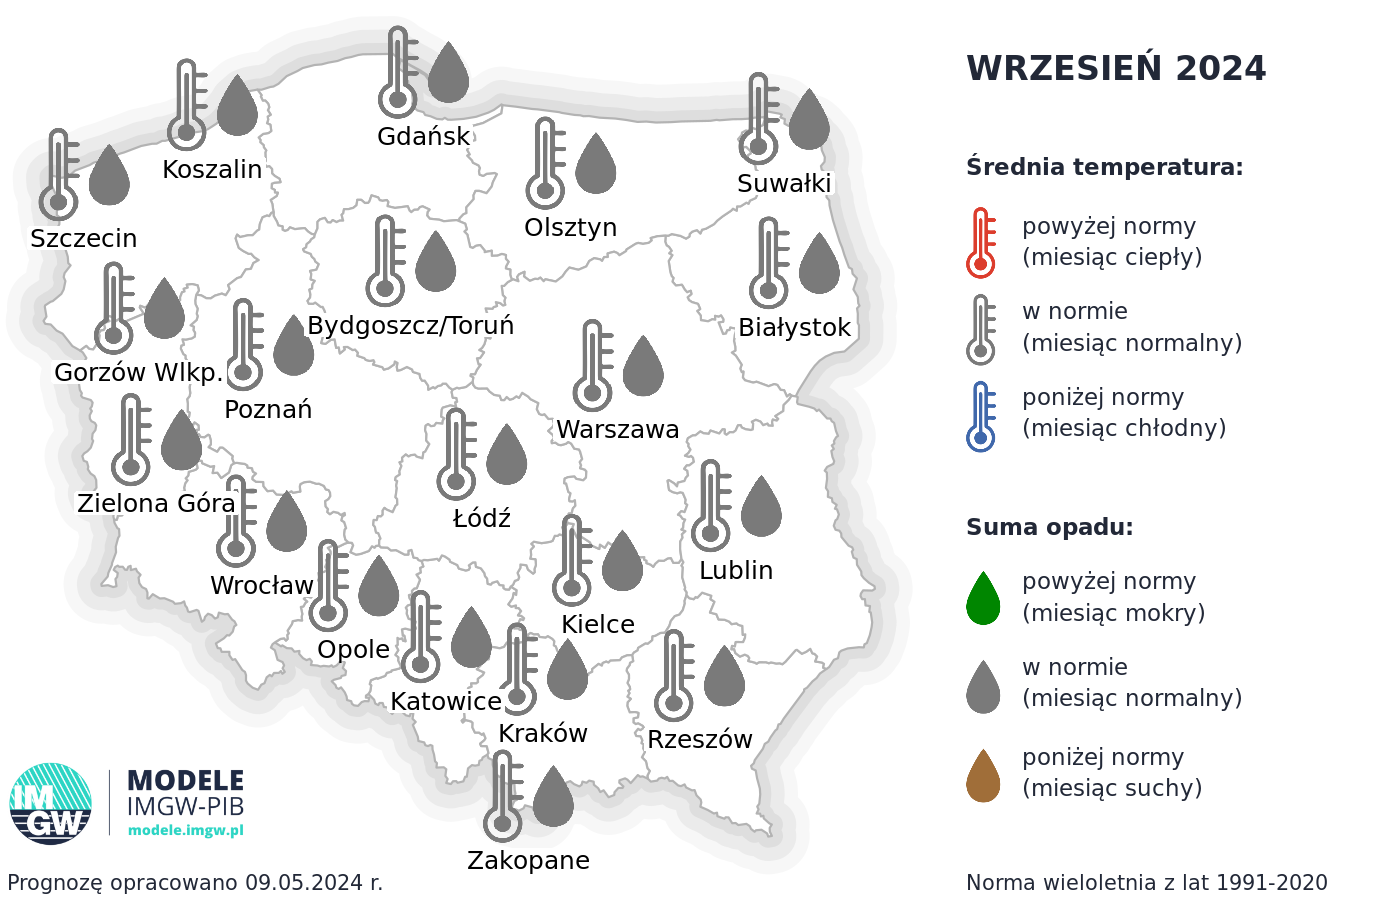 Rys. 4. Prognoza średniej miesięcznej temperatury powietrza i miesięcznej sumy opadów atmosferycznych na wrzesień 2024 r. dla wybranych miast w Polsce